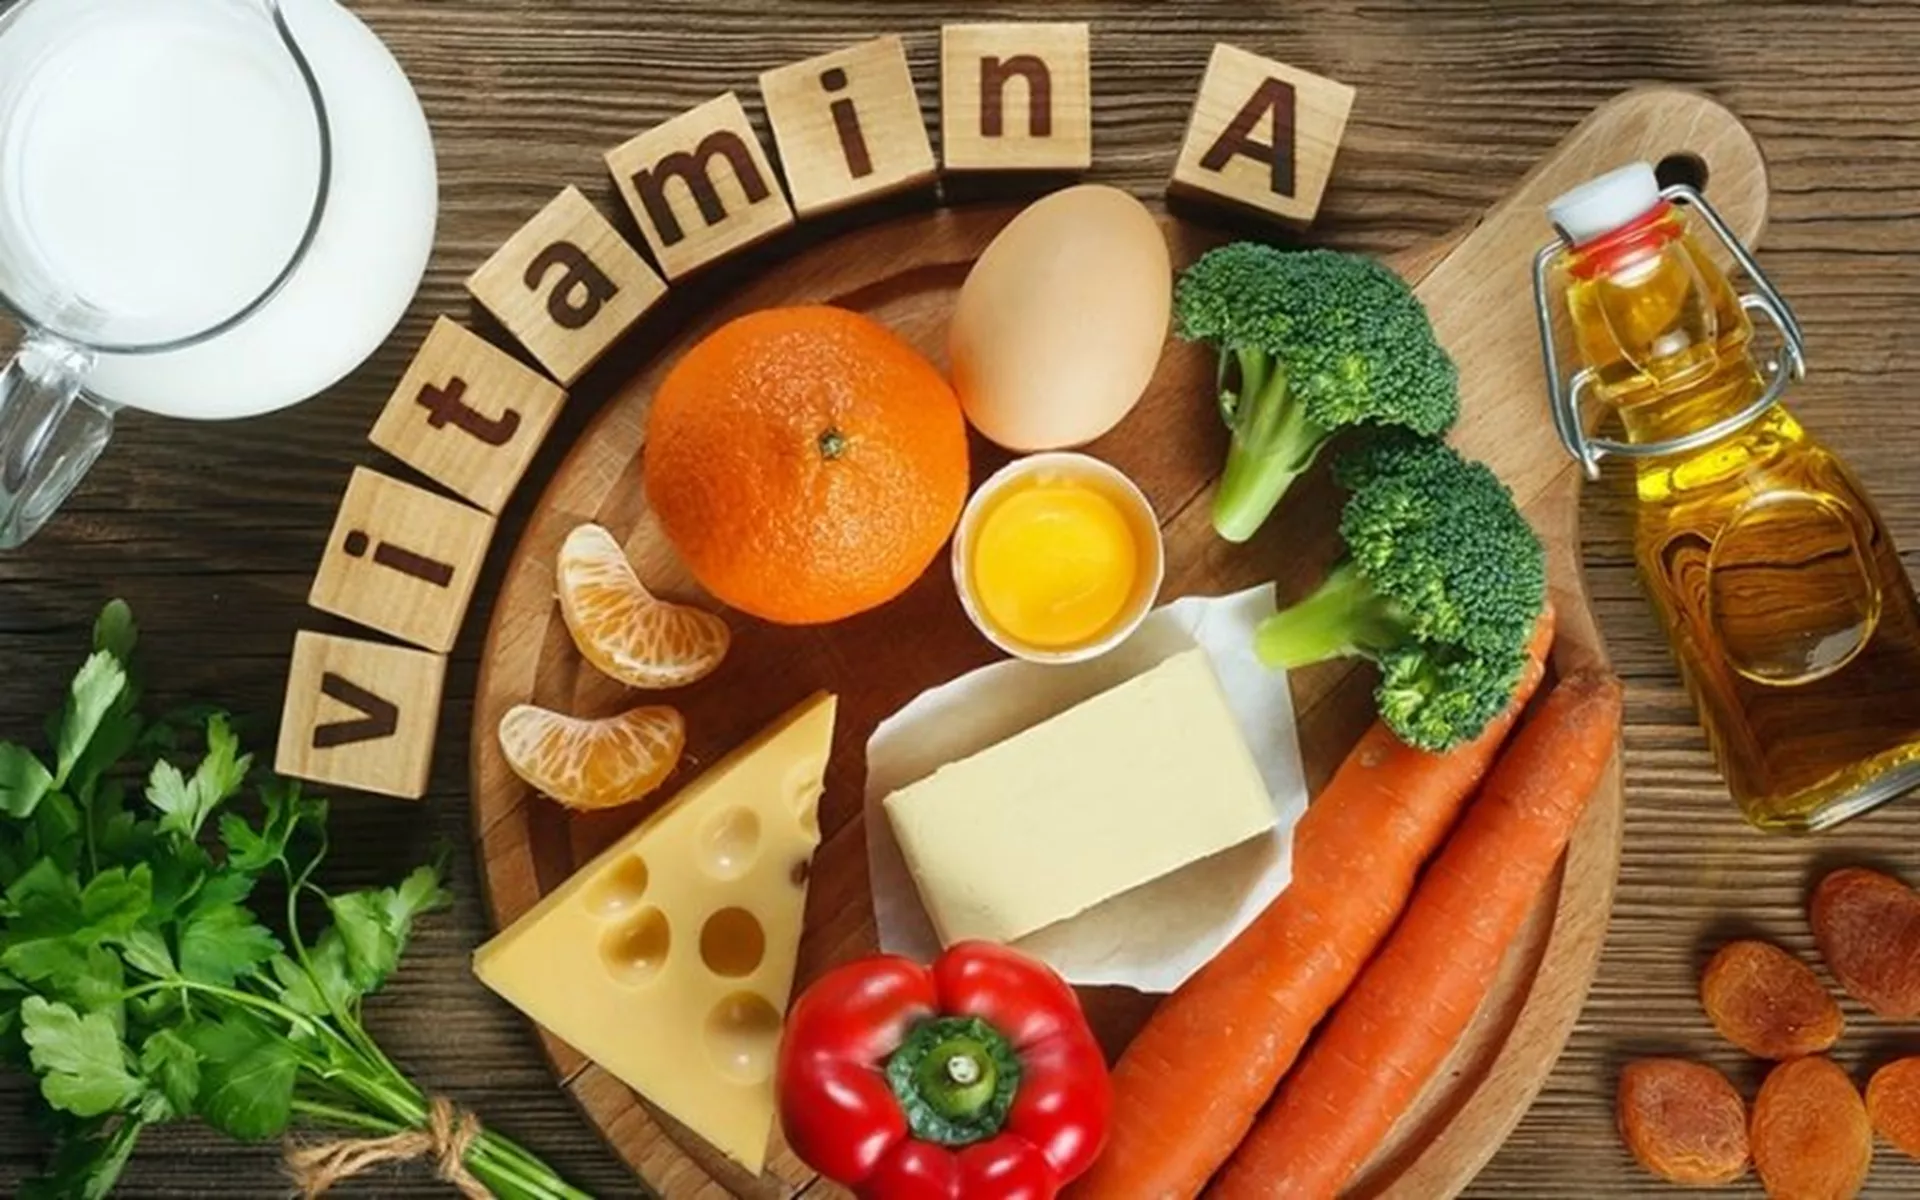 Gebelikte A vitamini Kullanımı Neden Önemli? Hangi Gıdalarda Bulunur?